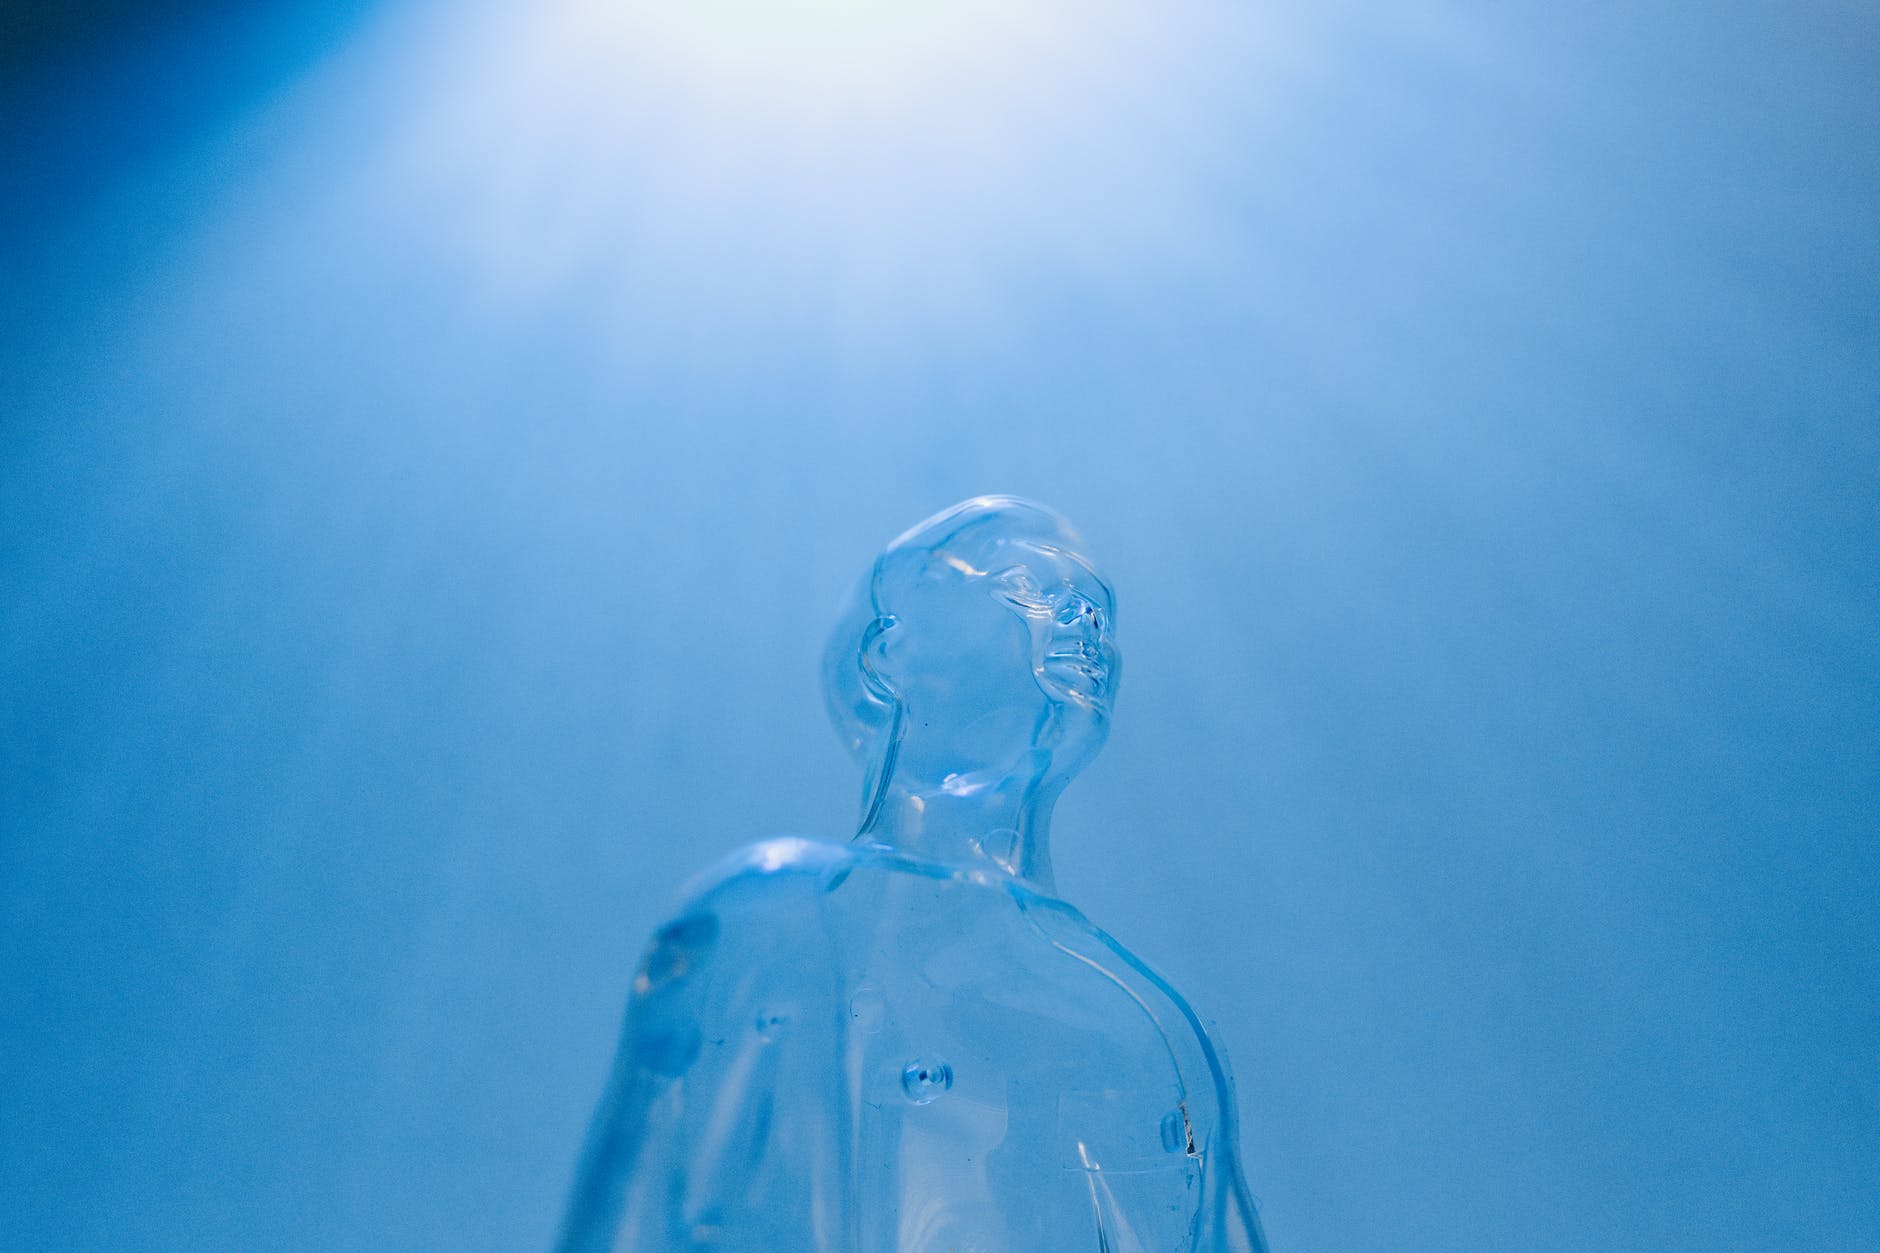 transparent mannequin on blue background